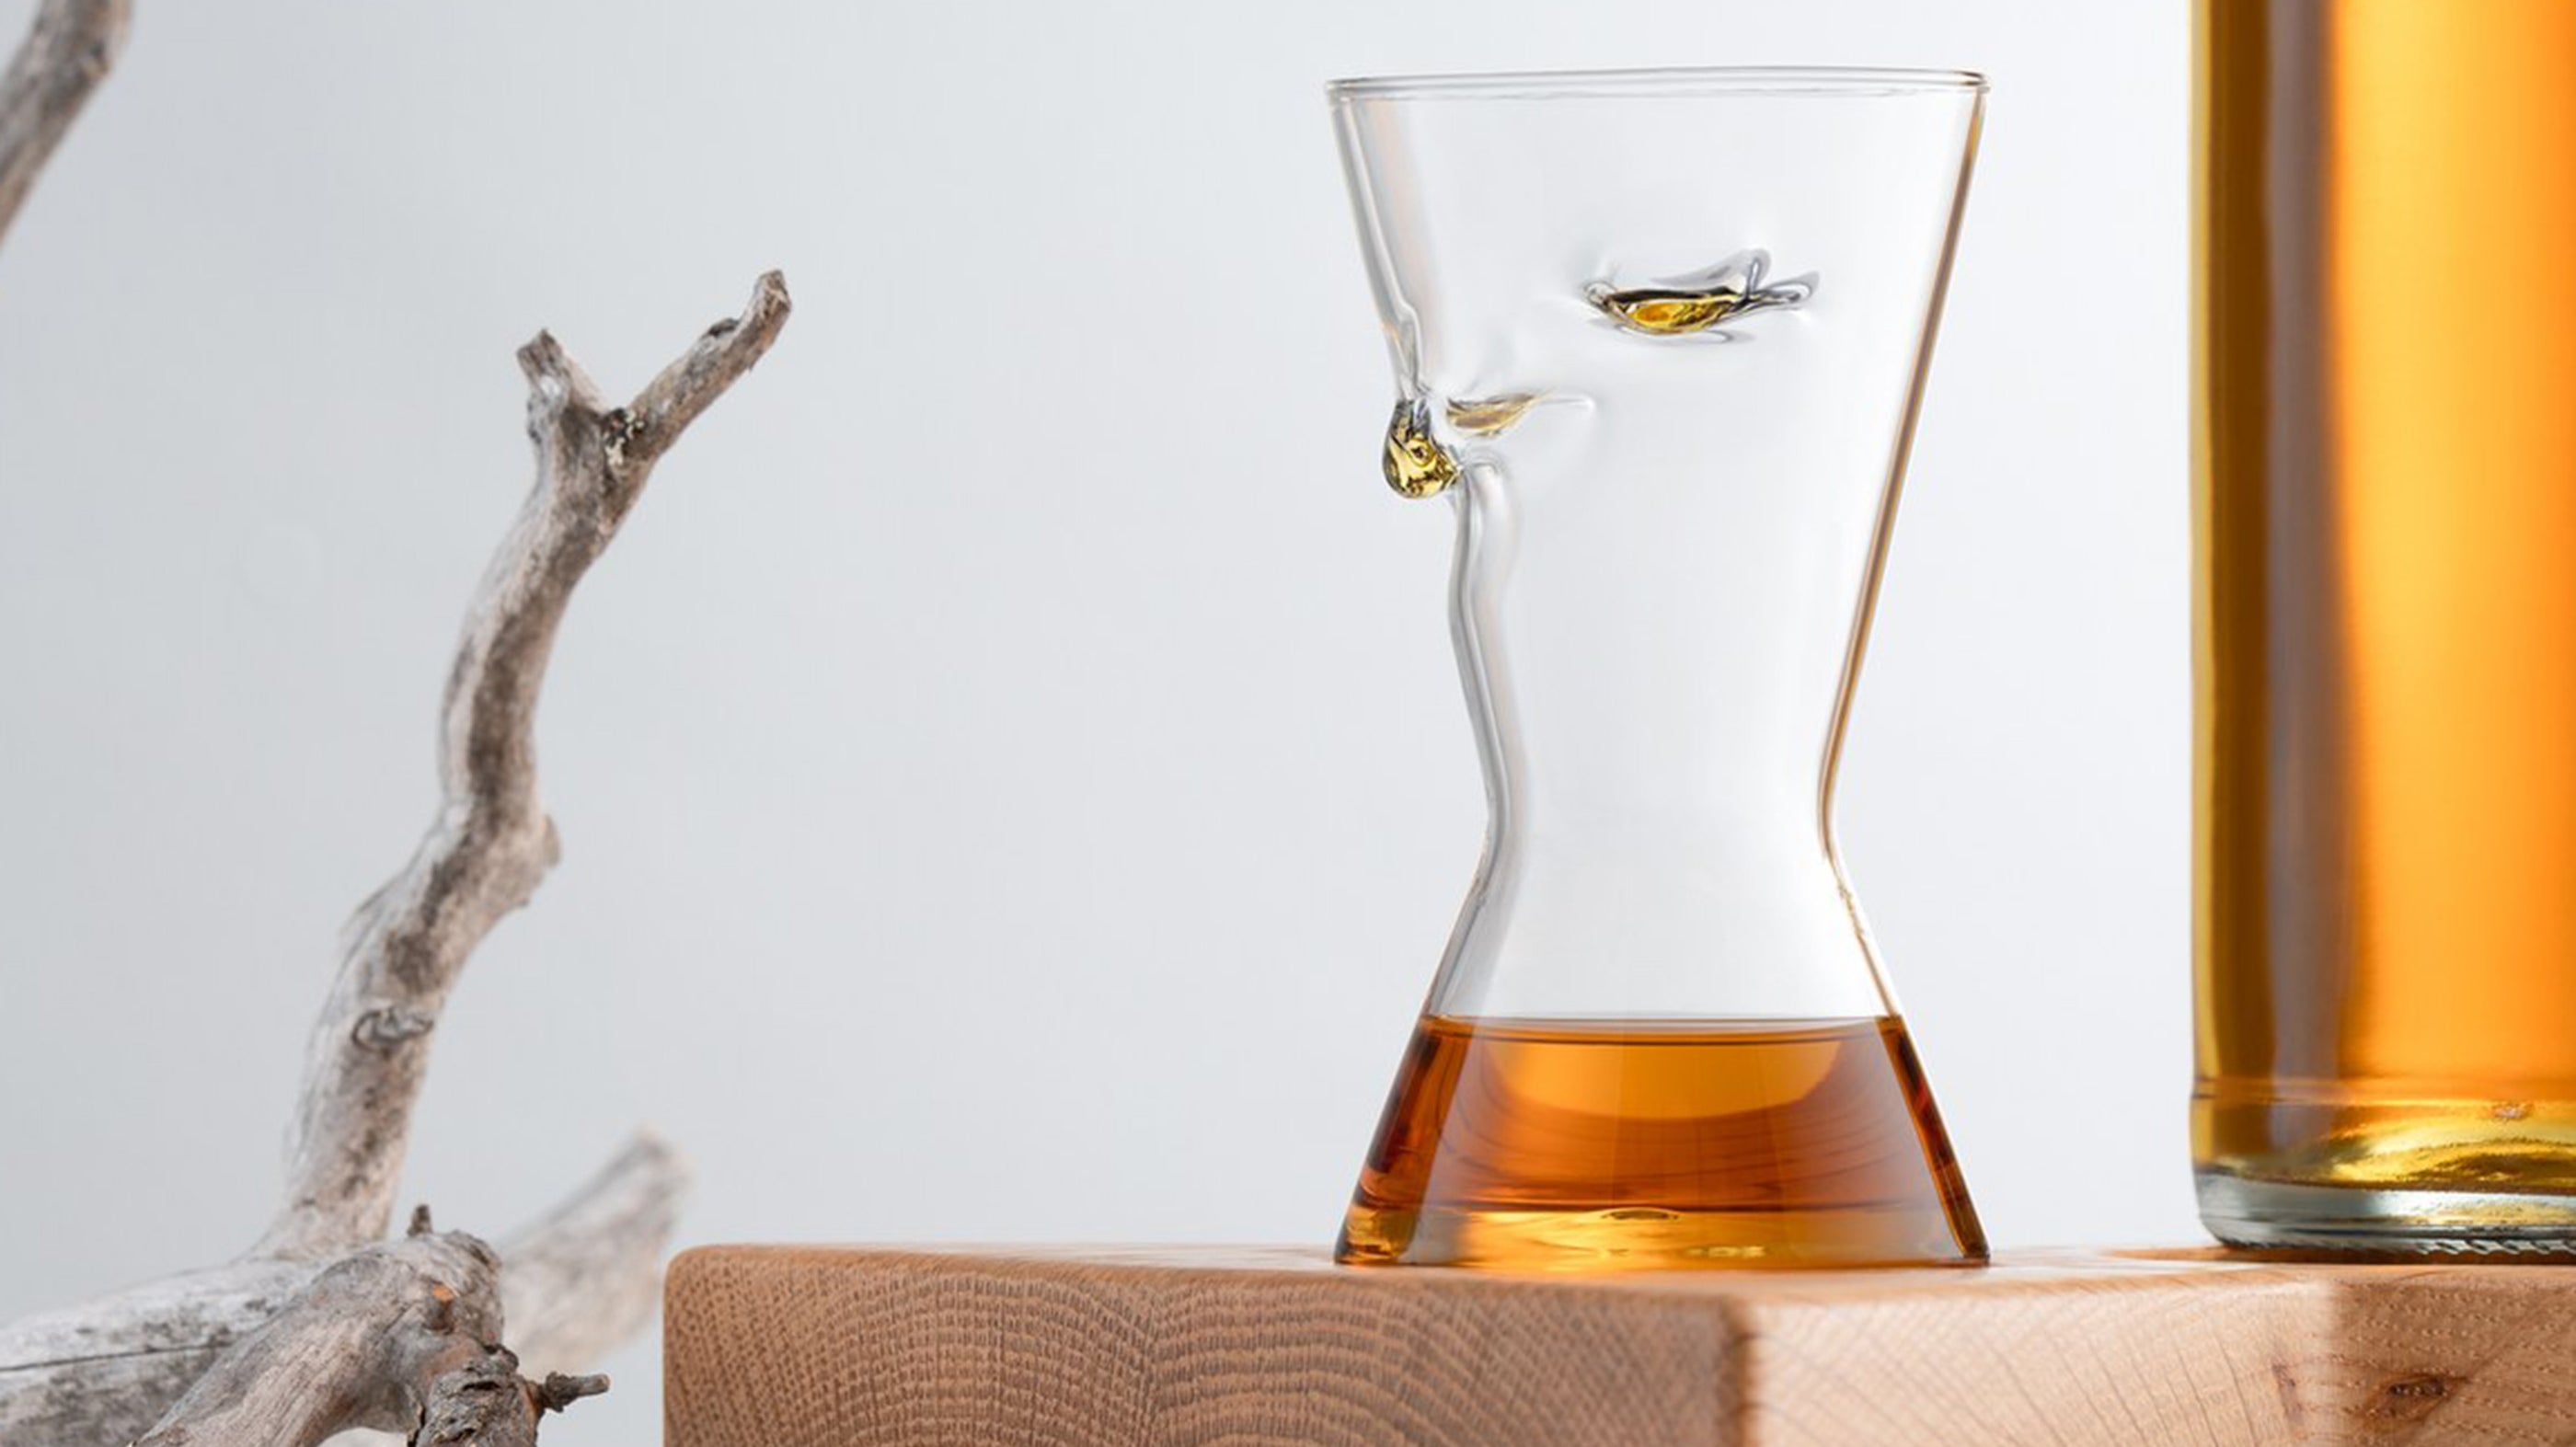 Suomalainen kemian tohtori kehitti lasin, joka mullistaa viskinmaistelun